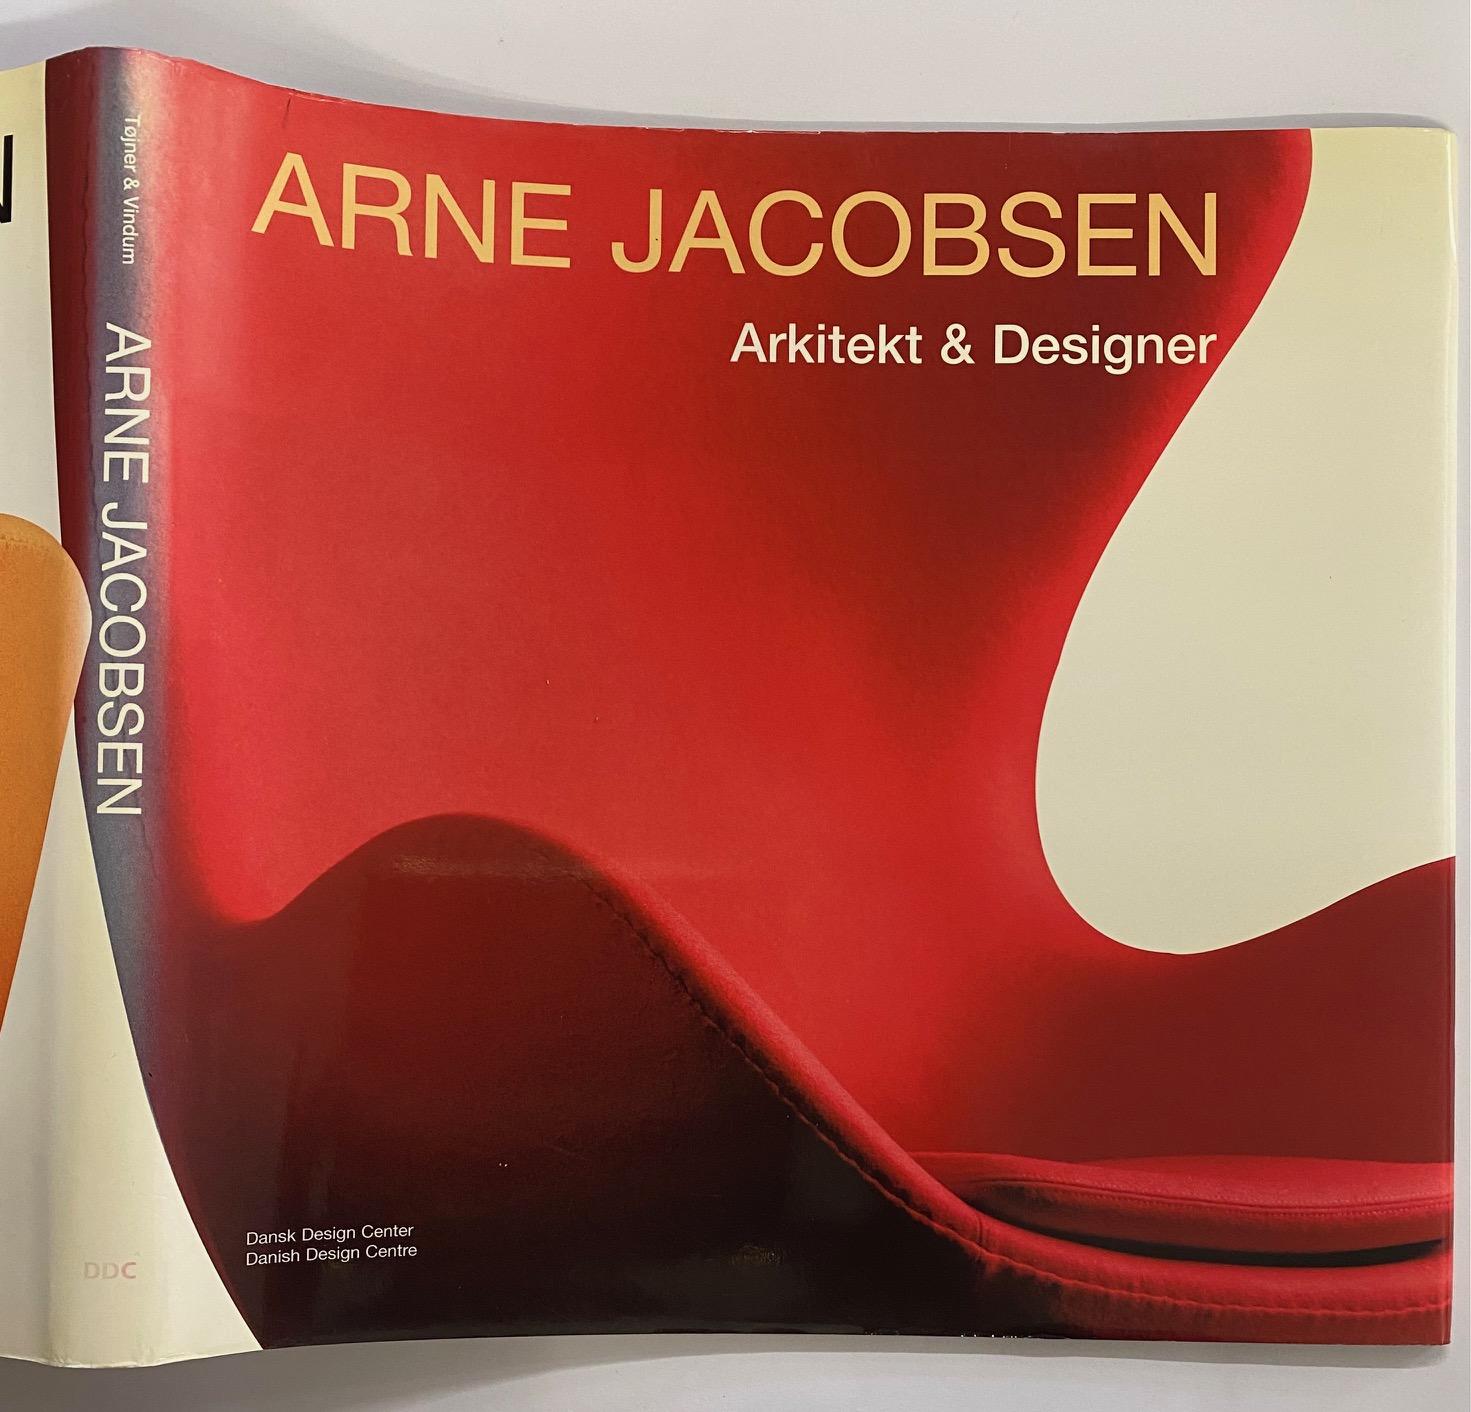 Arne Jacobsen Arkitekt & Designer by Poul Erik Tojner & Kjeld Vindum (Book) For Sale 11